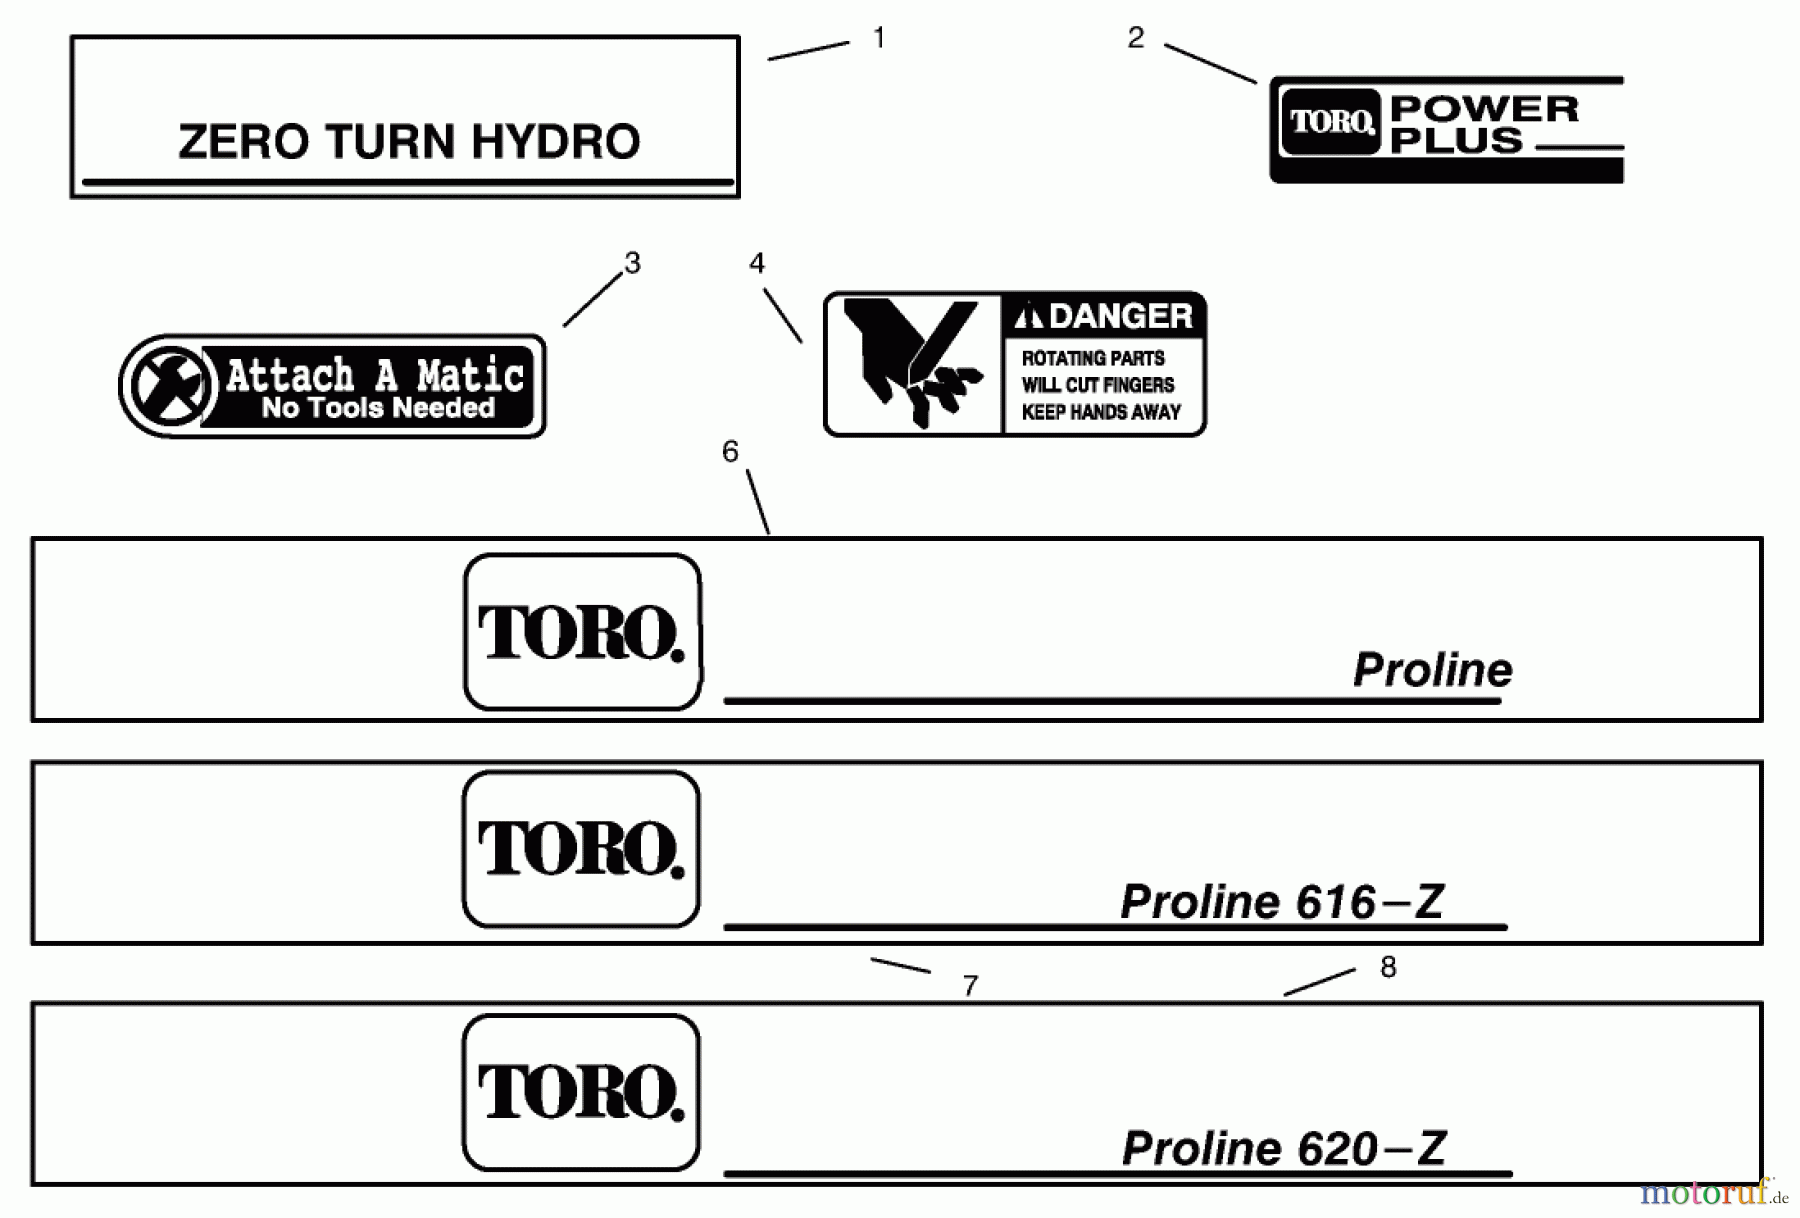  Toro Neu Mowers, Zero-Turn 74120 (616-Z) - Toro 616-Z Tractor, 1995 (590001-599999) DECALS #2